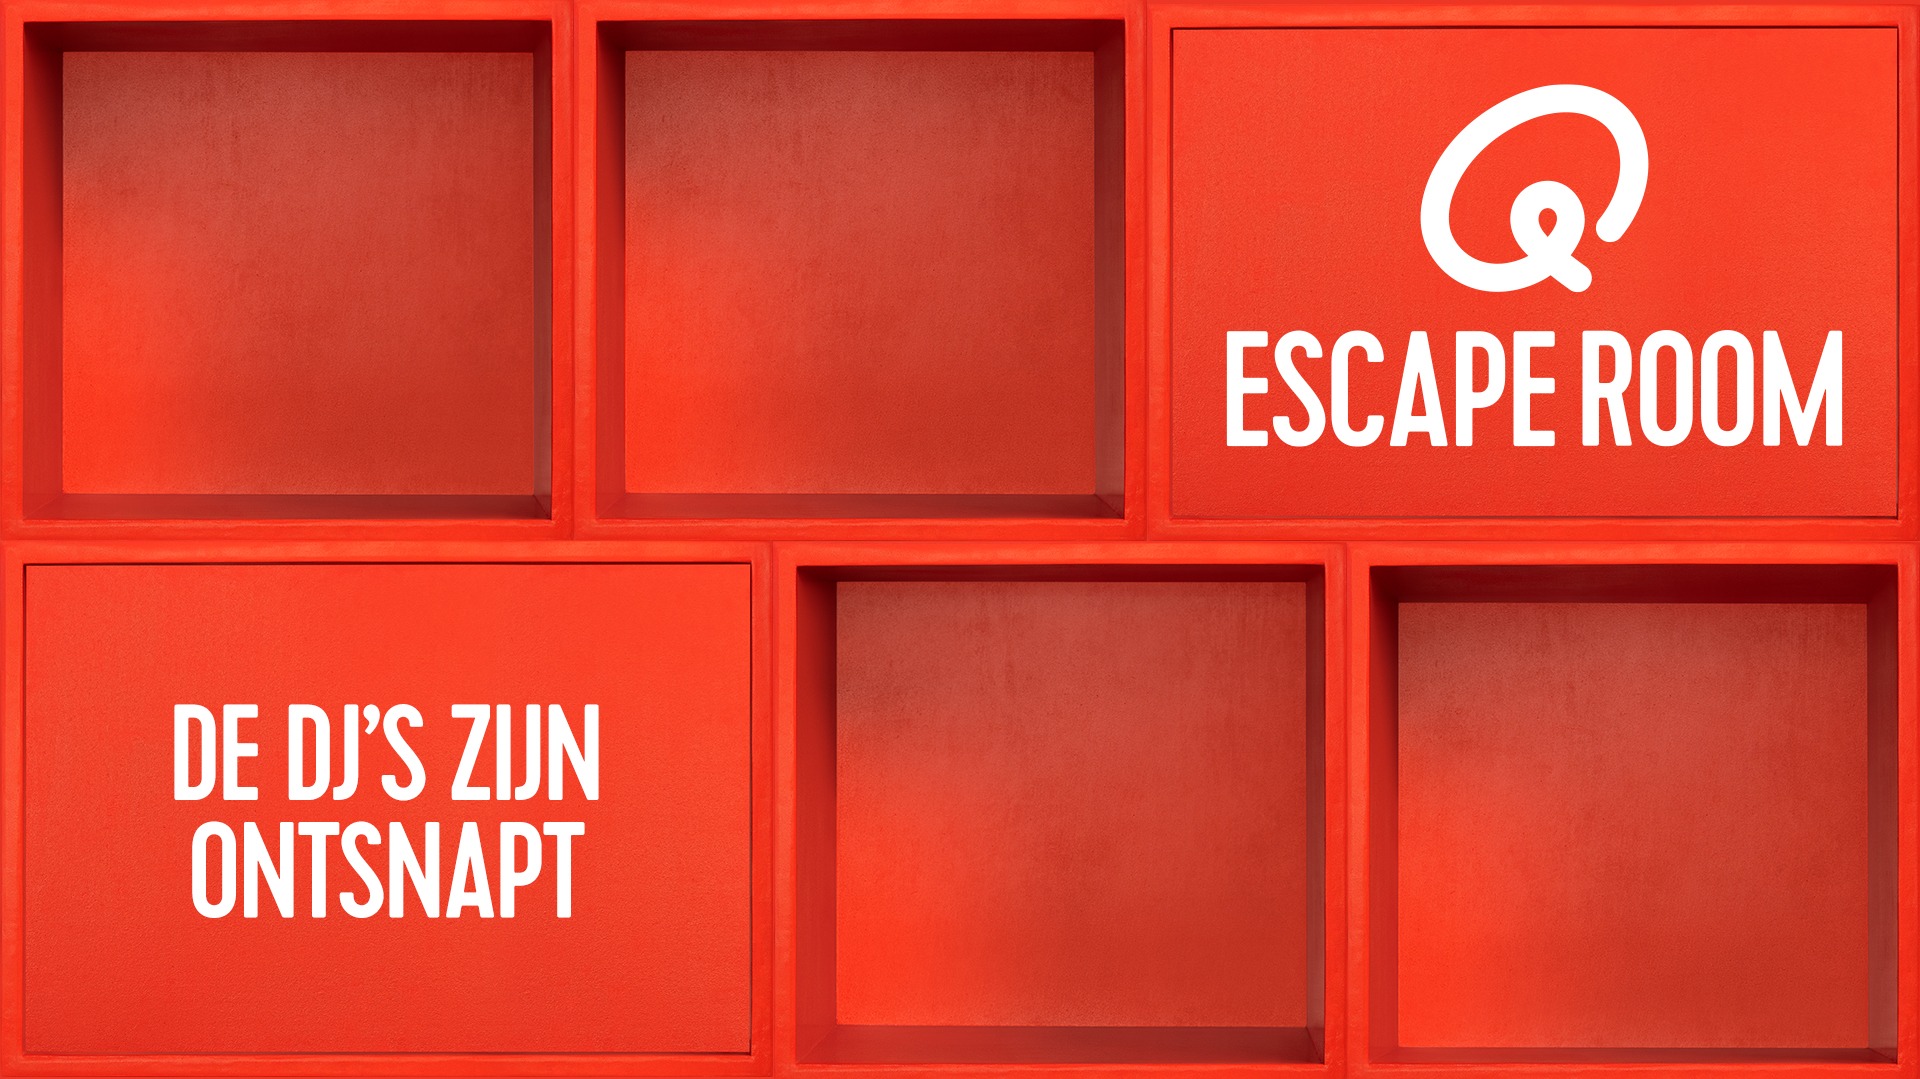 Escaperoom 1920x1080 ontsnapt